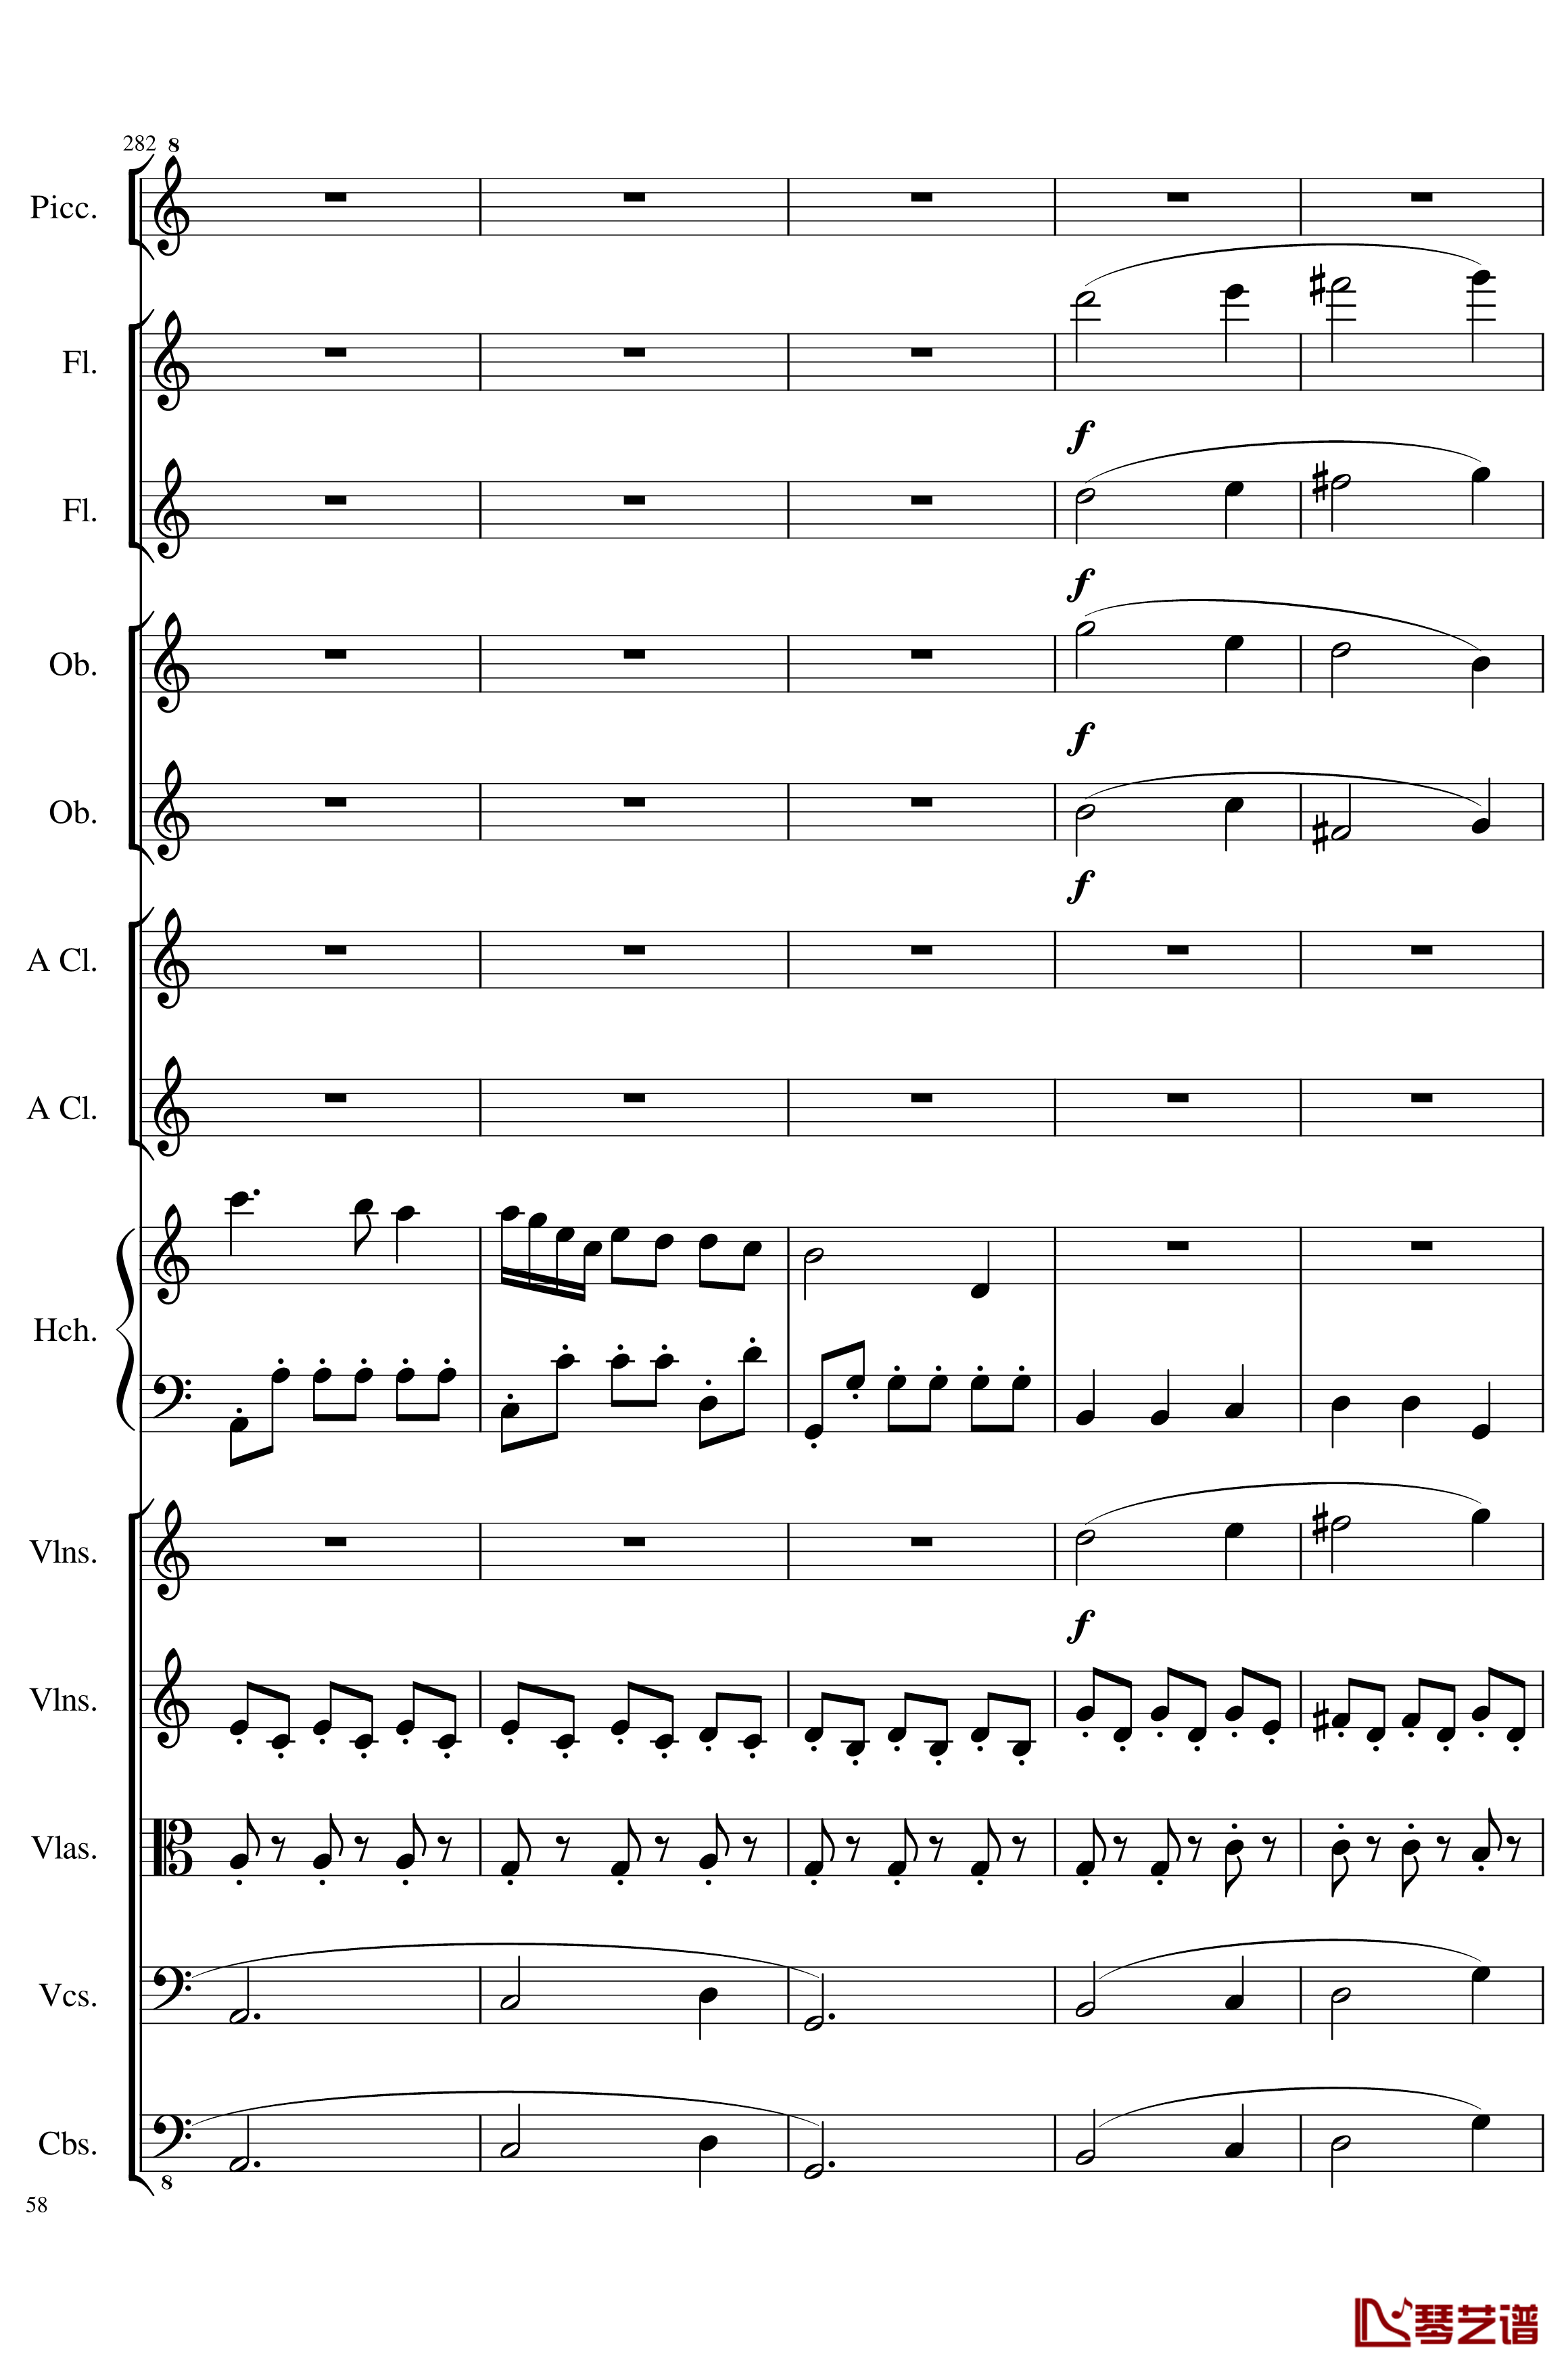 7 Contredanses No.1-7, Op.124钢琴谱-7首乡村舞曲，第一至第七，作品124-一个球58